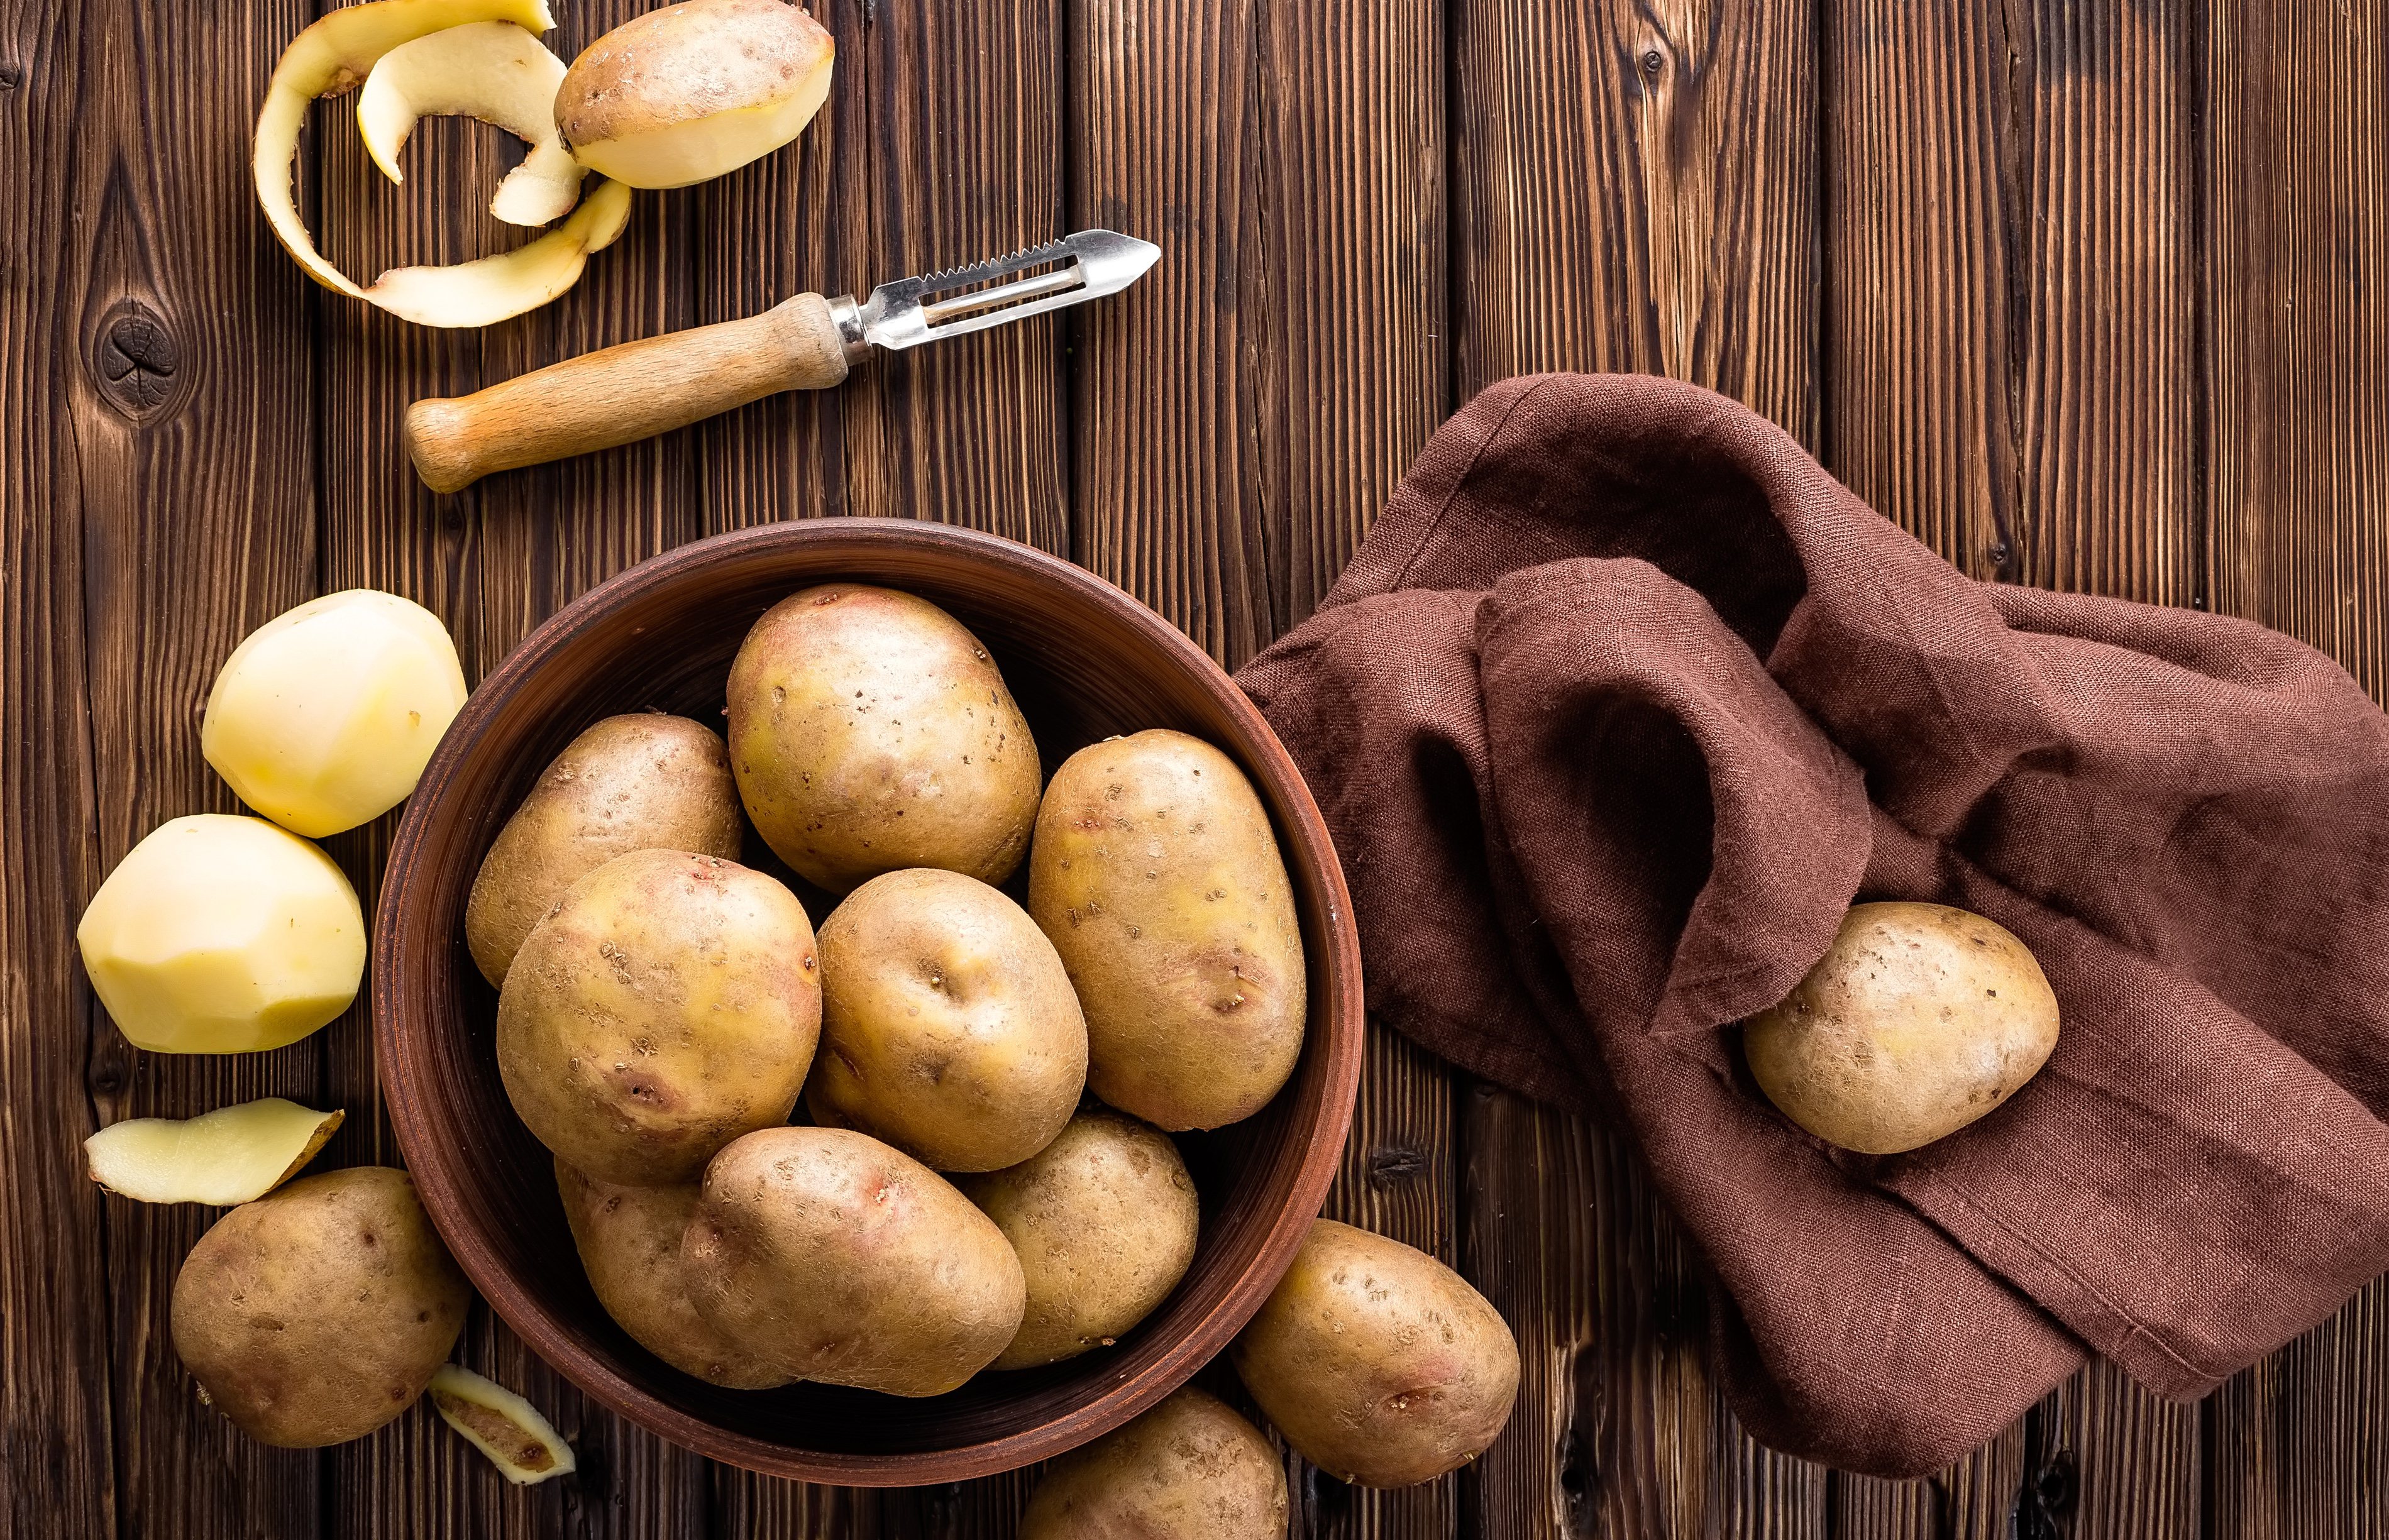 La patata, el alimento estrella: 10 recetas desde todas sus facetas